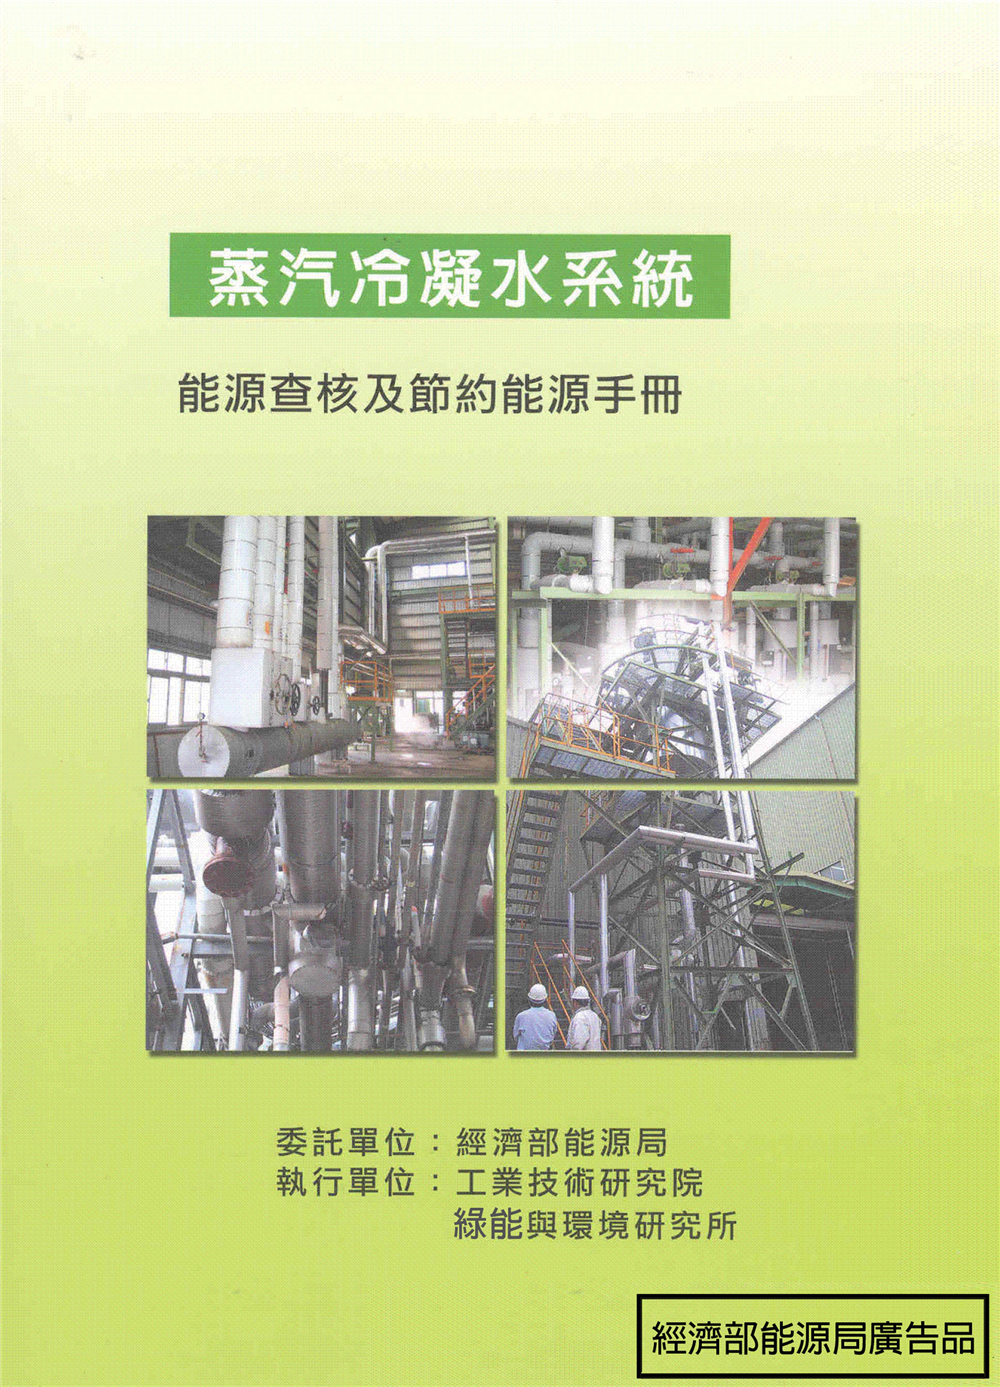 能源查核與節約能源手冊-蒸汽冷凝水系統 的封面圖